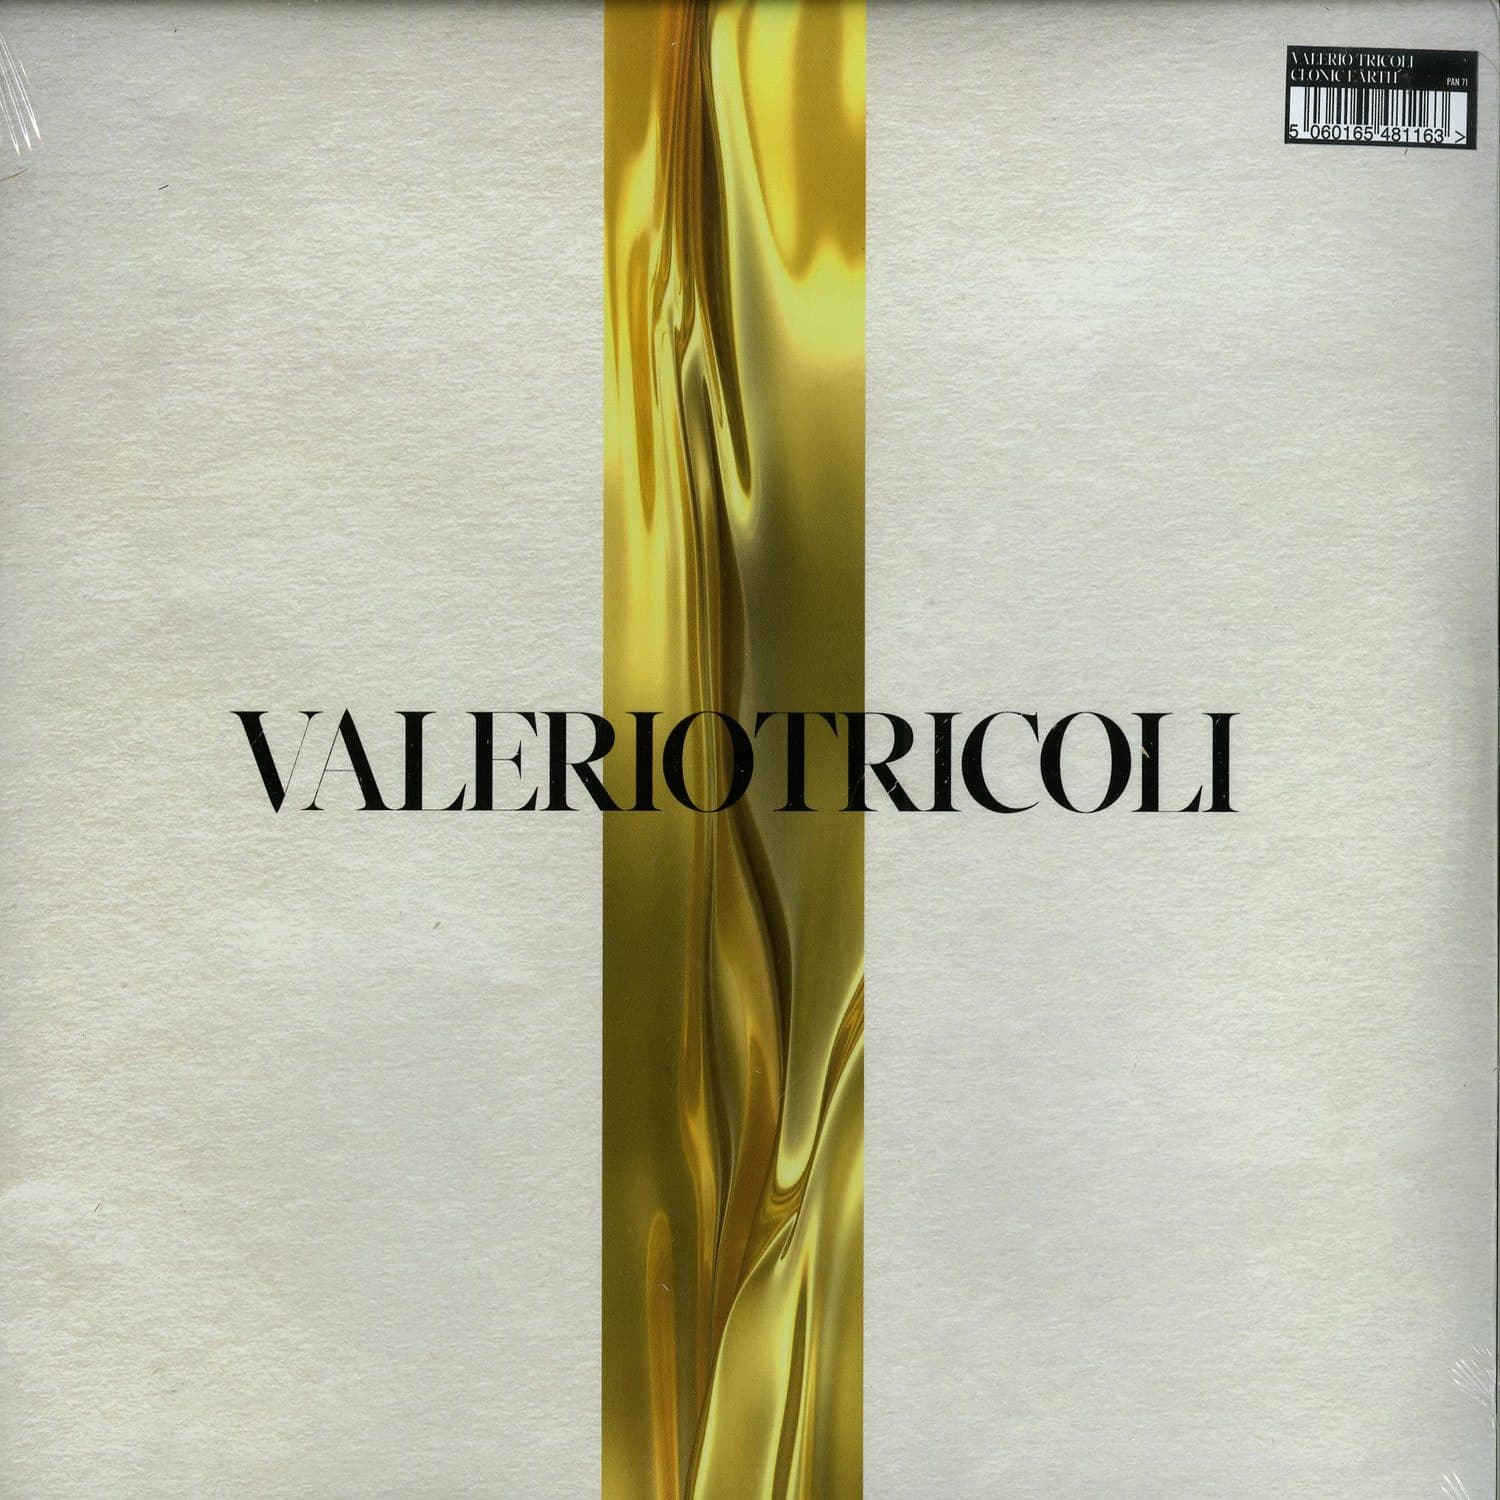 Valerio Tricoli - CLONIC EARTH 